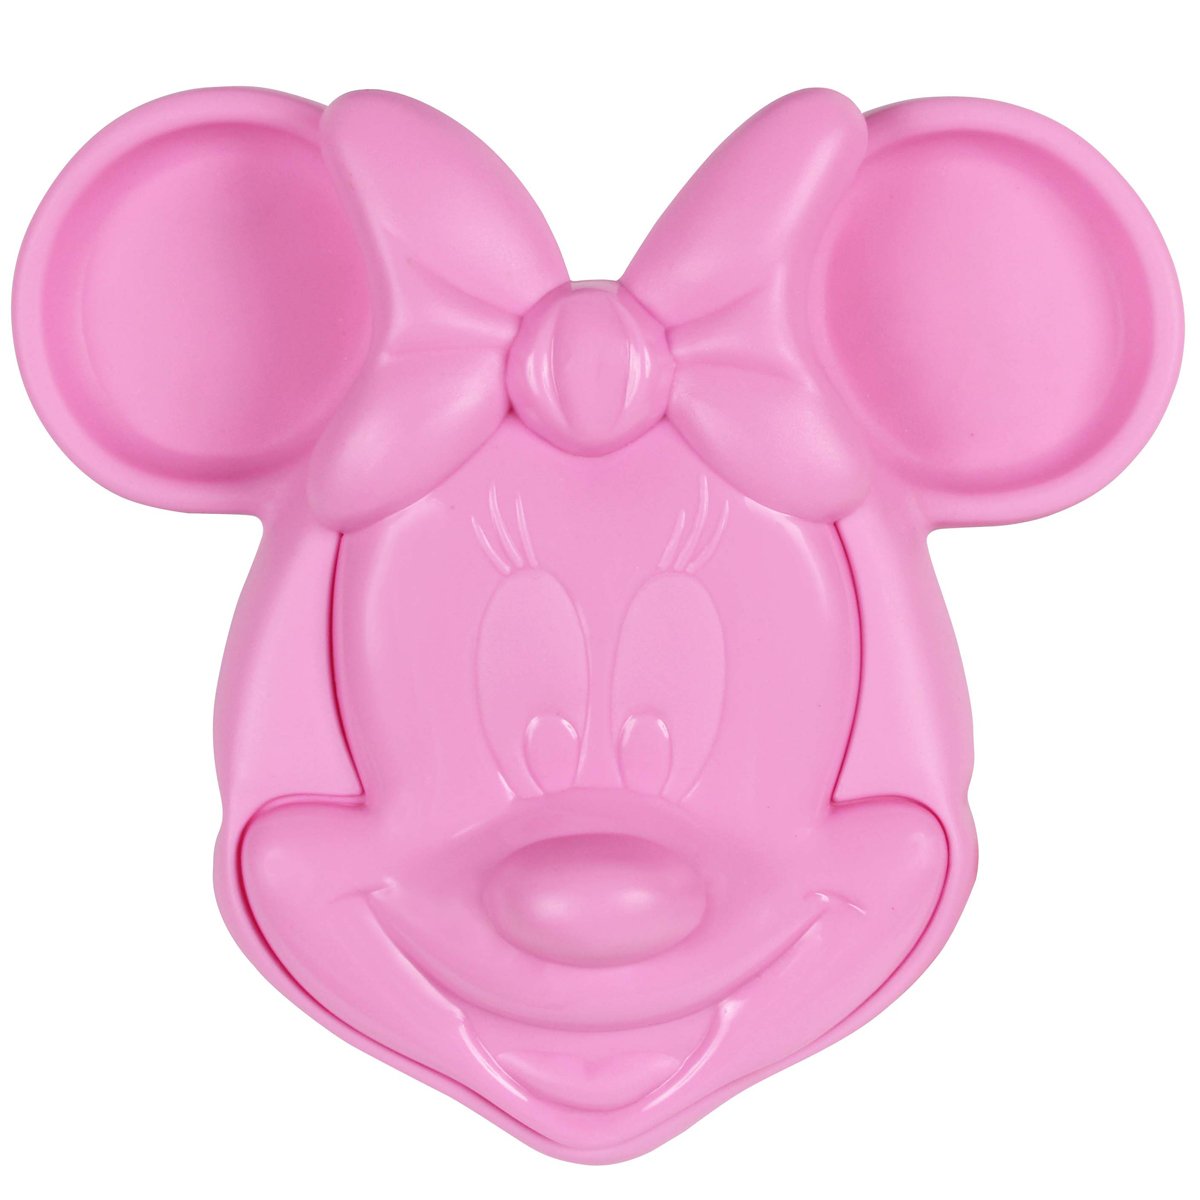 Prato Infantil Alimentação do Bebê com Tampa e Divisórias Formato Minnie Mouse 3d Rosa Disney